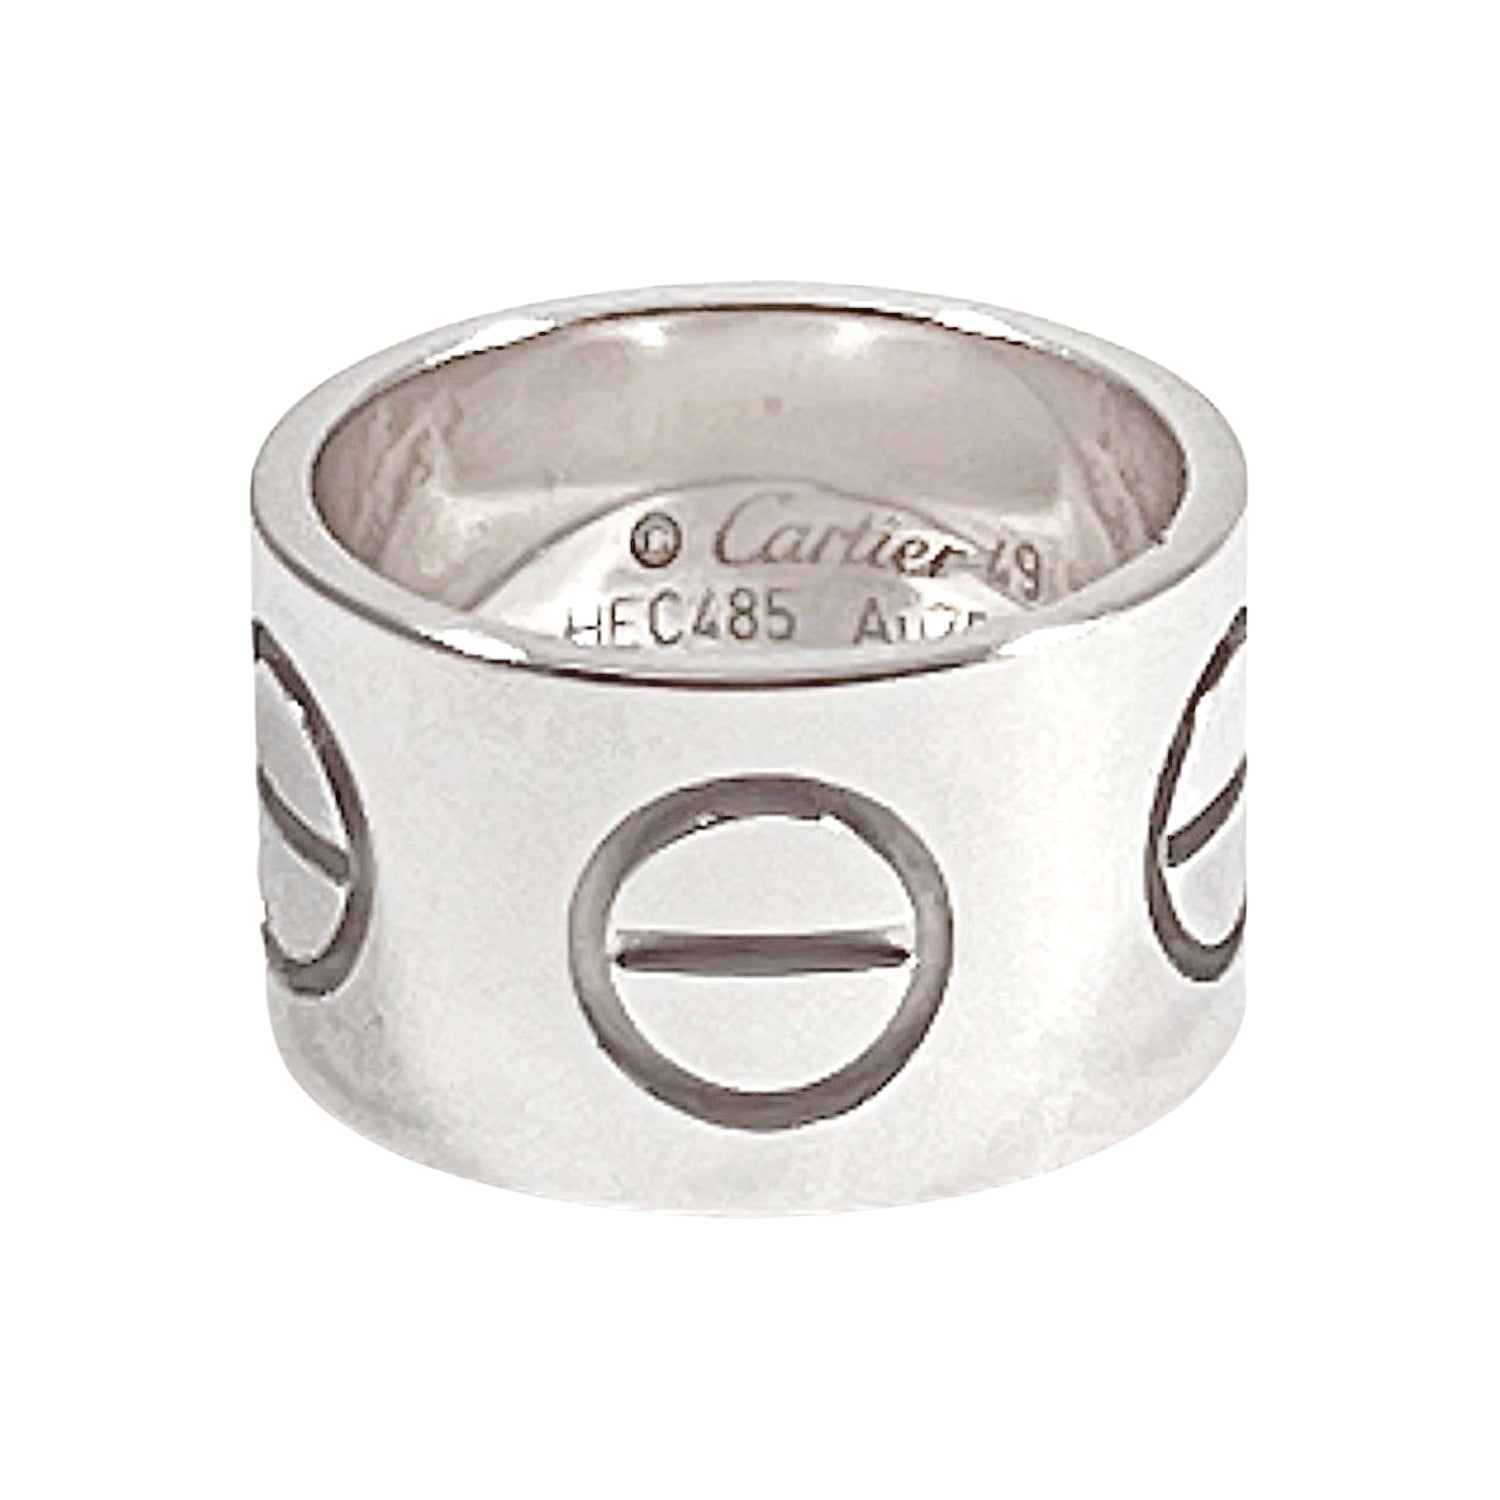 Pre-Owned Cartier CARTIER 1895 Wedding Ring No. 7.5 Pt950 Platinum Women's  (Like New) - Walmart.com